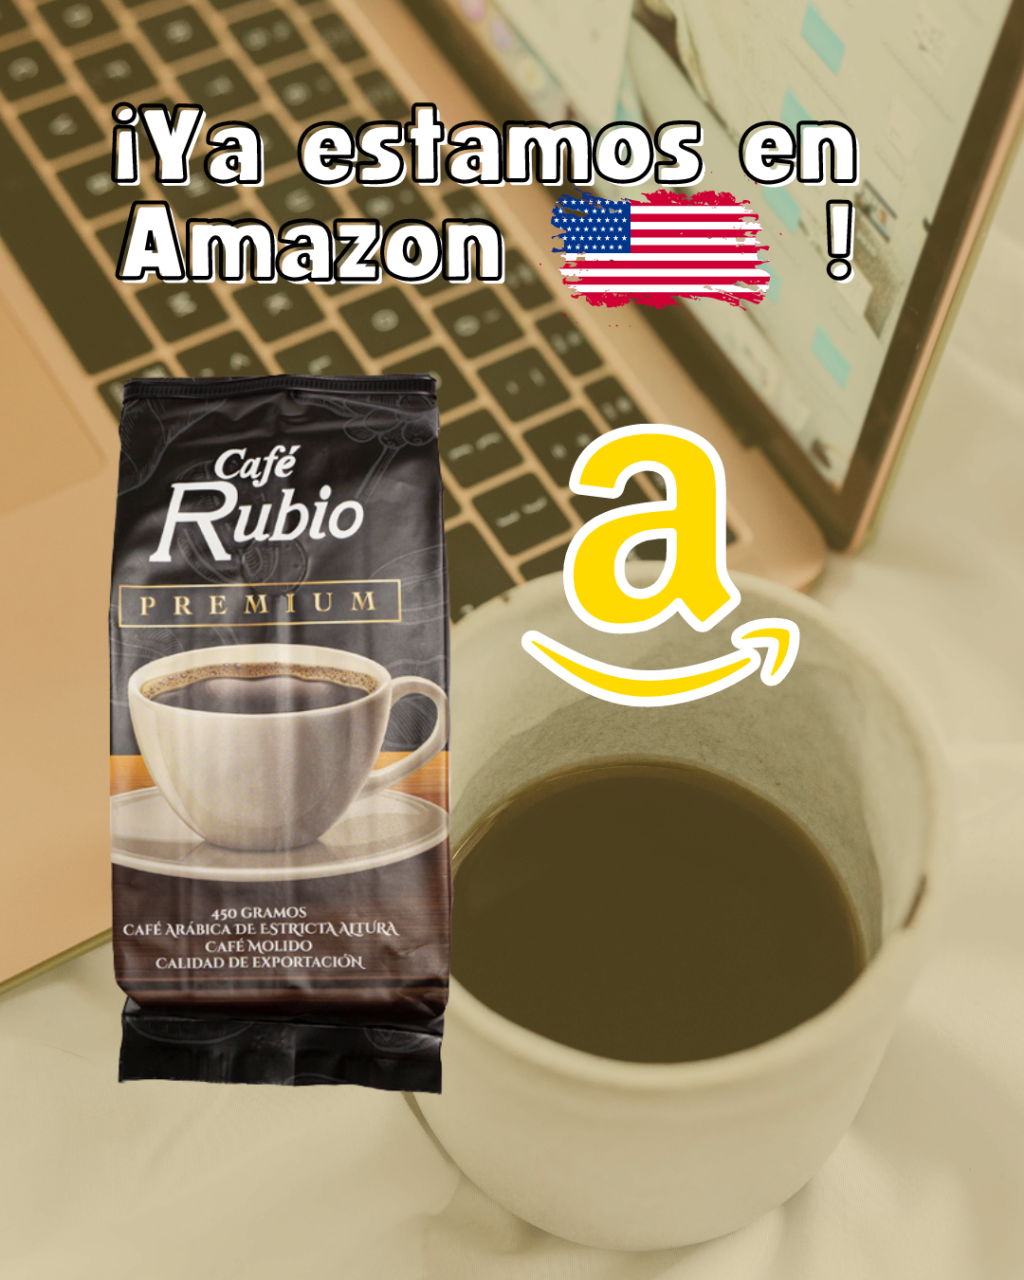 Café Rubio Premium ya disponible ya en Amazon en Estados Unidos